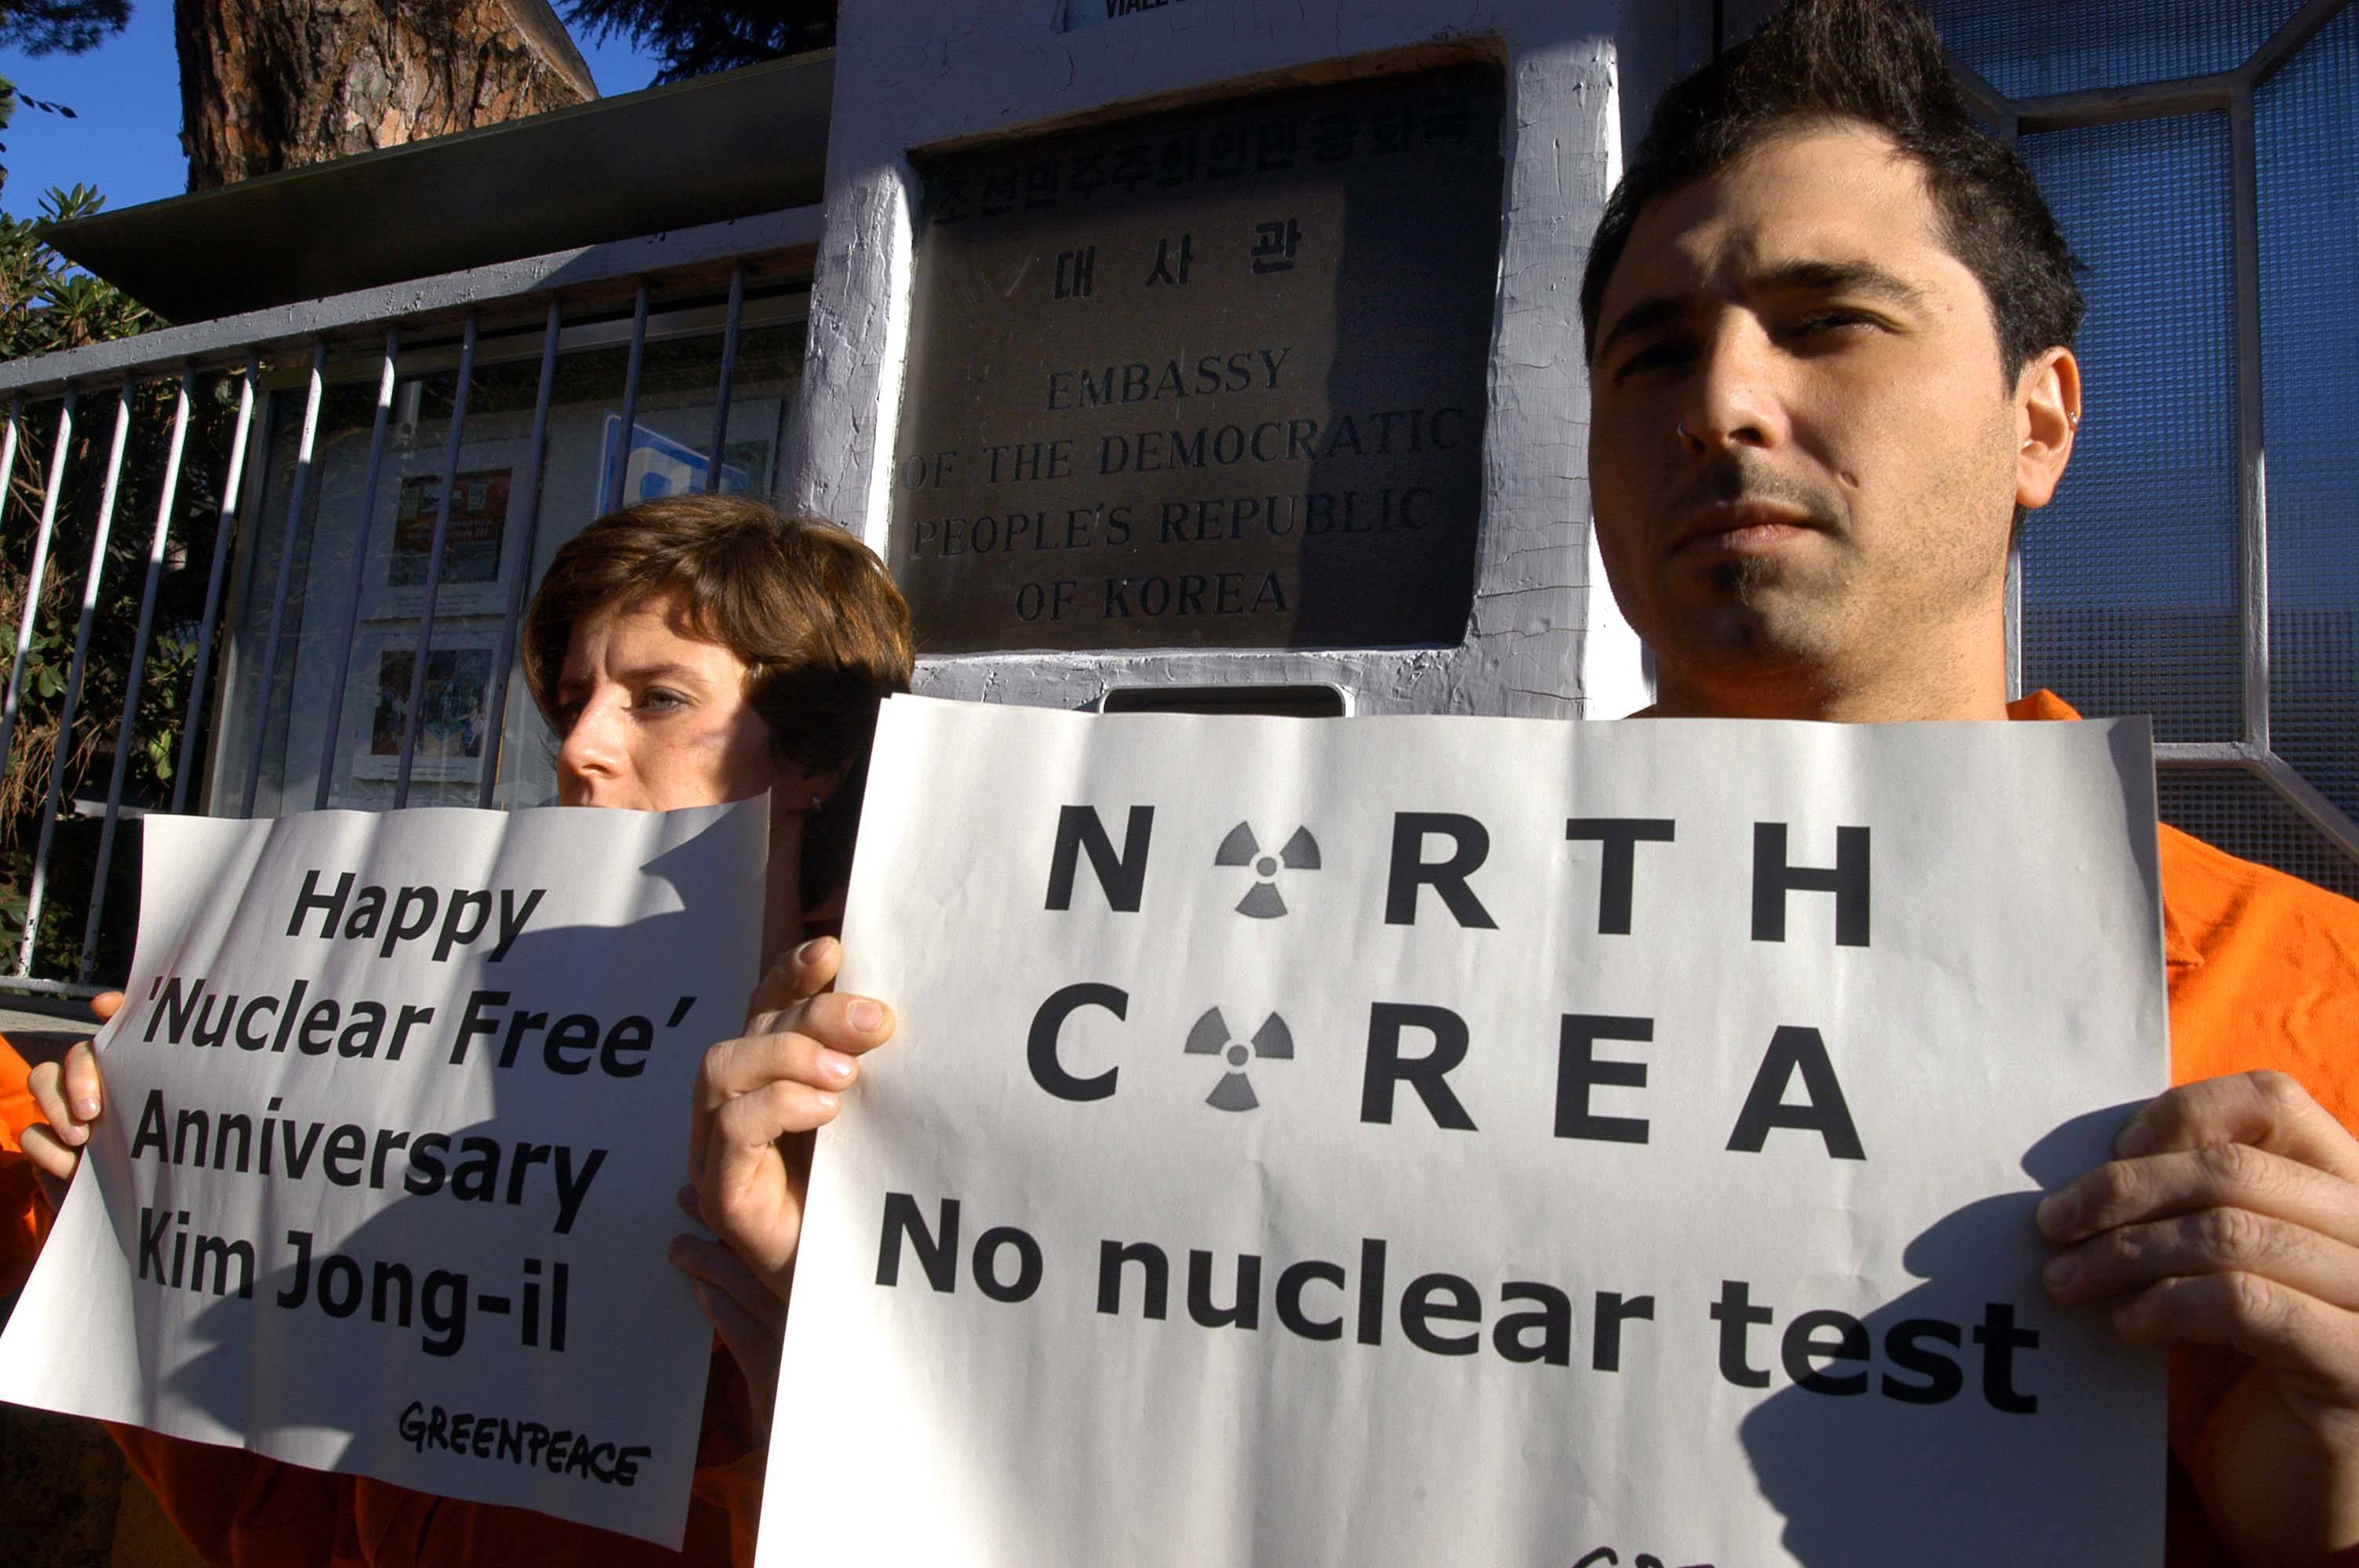 Attivisti di Greenpeace in azione presso l'ambasciata della Corea del Nord a Roma.  © Greenpeace / Montesi